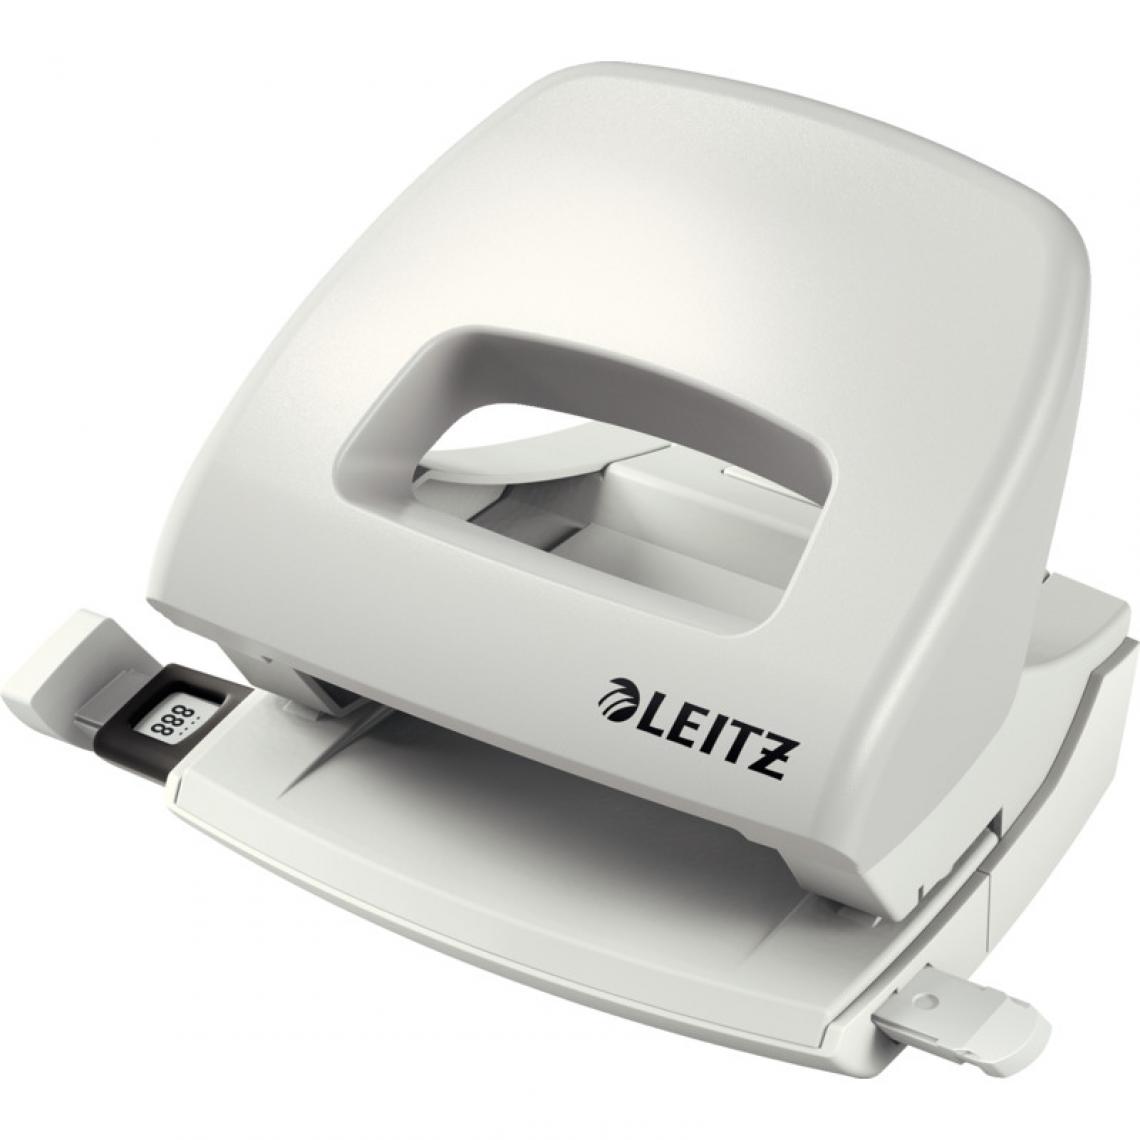 Leitz - LEITZ perforateur Nexxt 5038, capacité: 16 feuilles, gris () - Accessoires Bureau